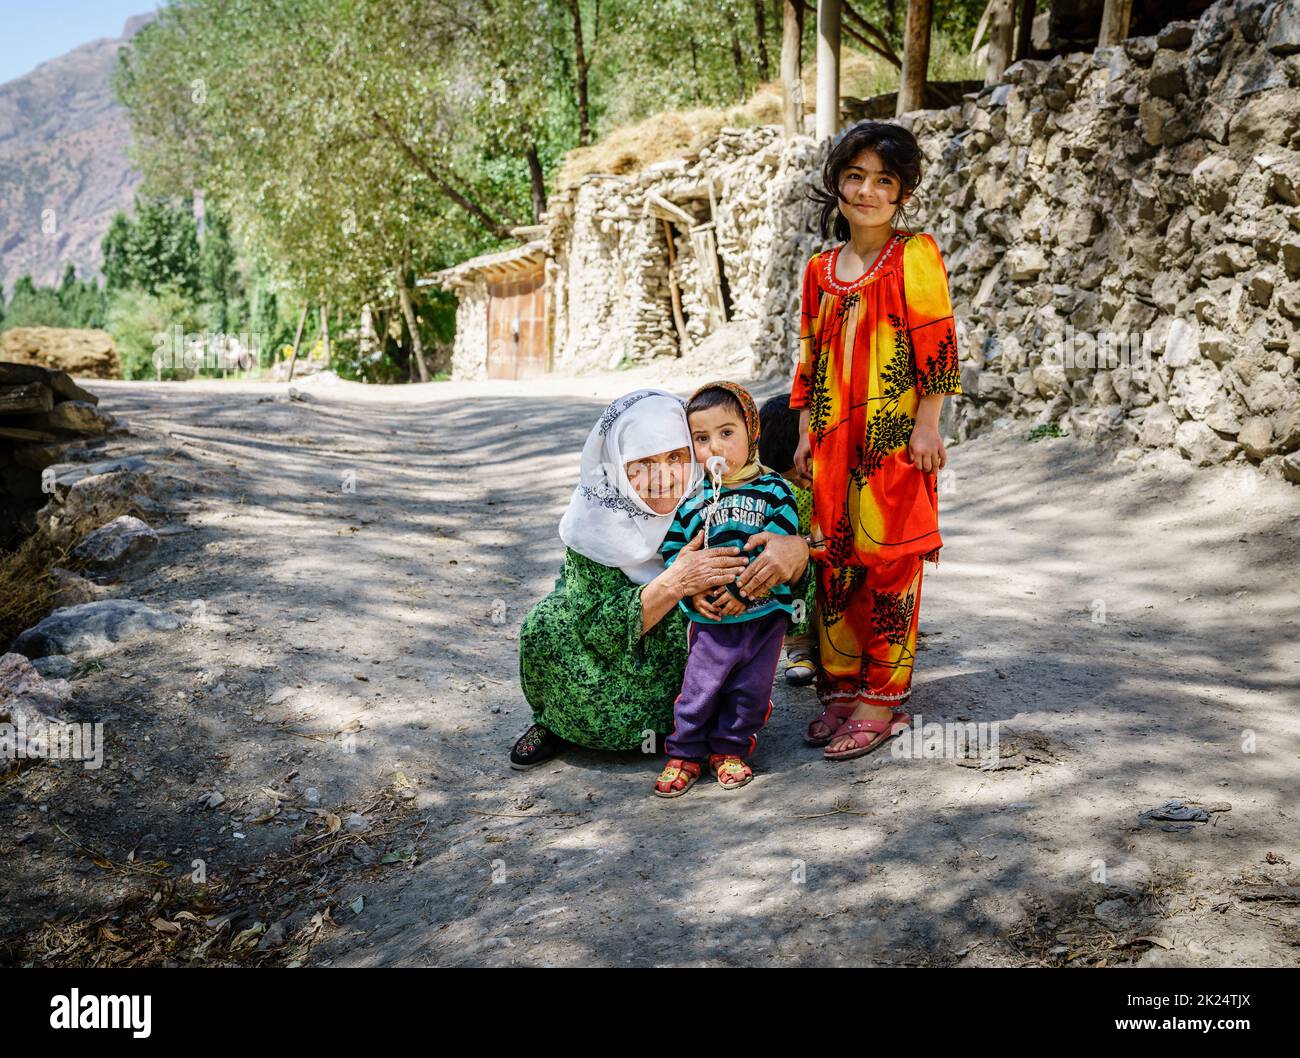 26 août 2016, village de Margib, Tadjikistan : enfants locaux avec leur grand-mère dans un petit village de la région de Yaghnob au Tadjikistan Banque D'Images